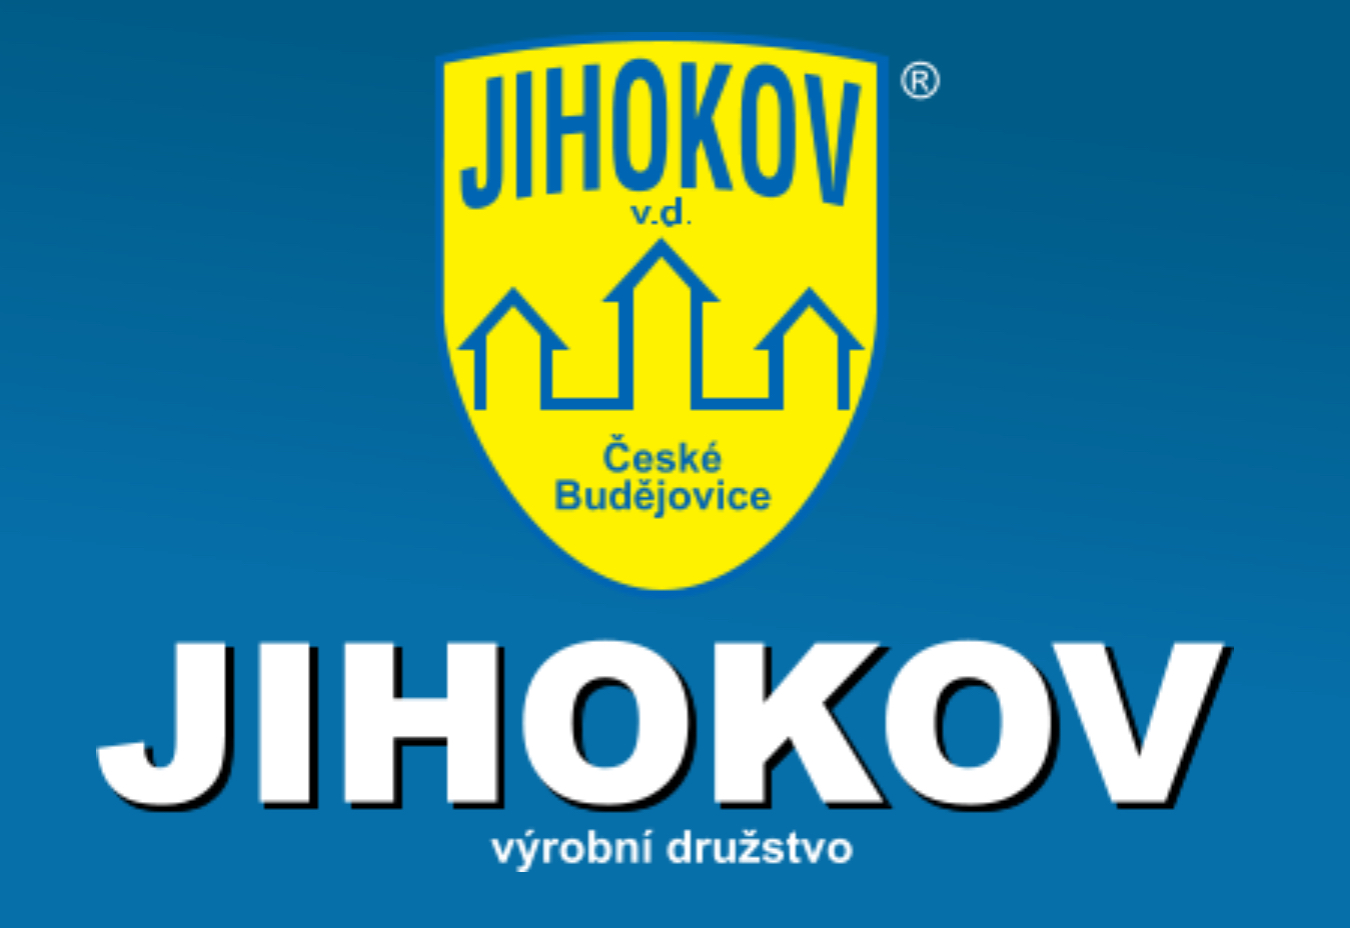 Jihokov